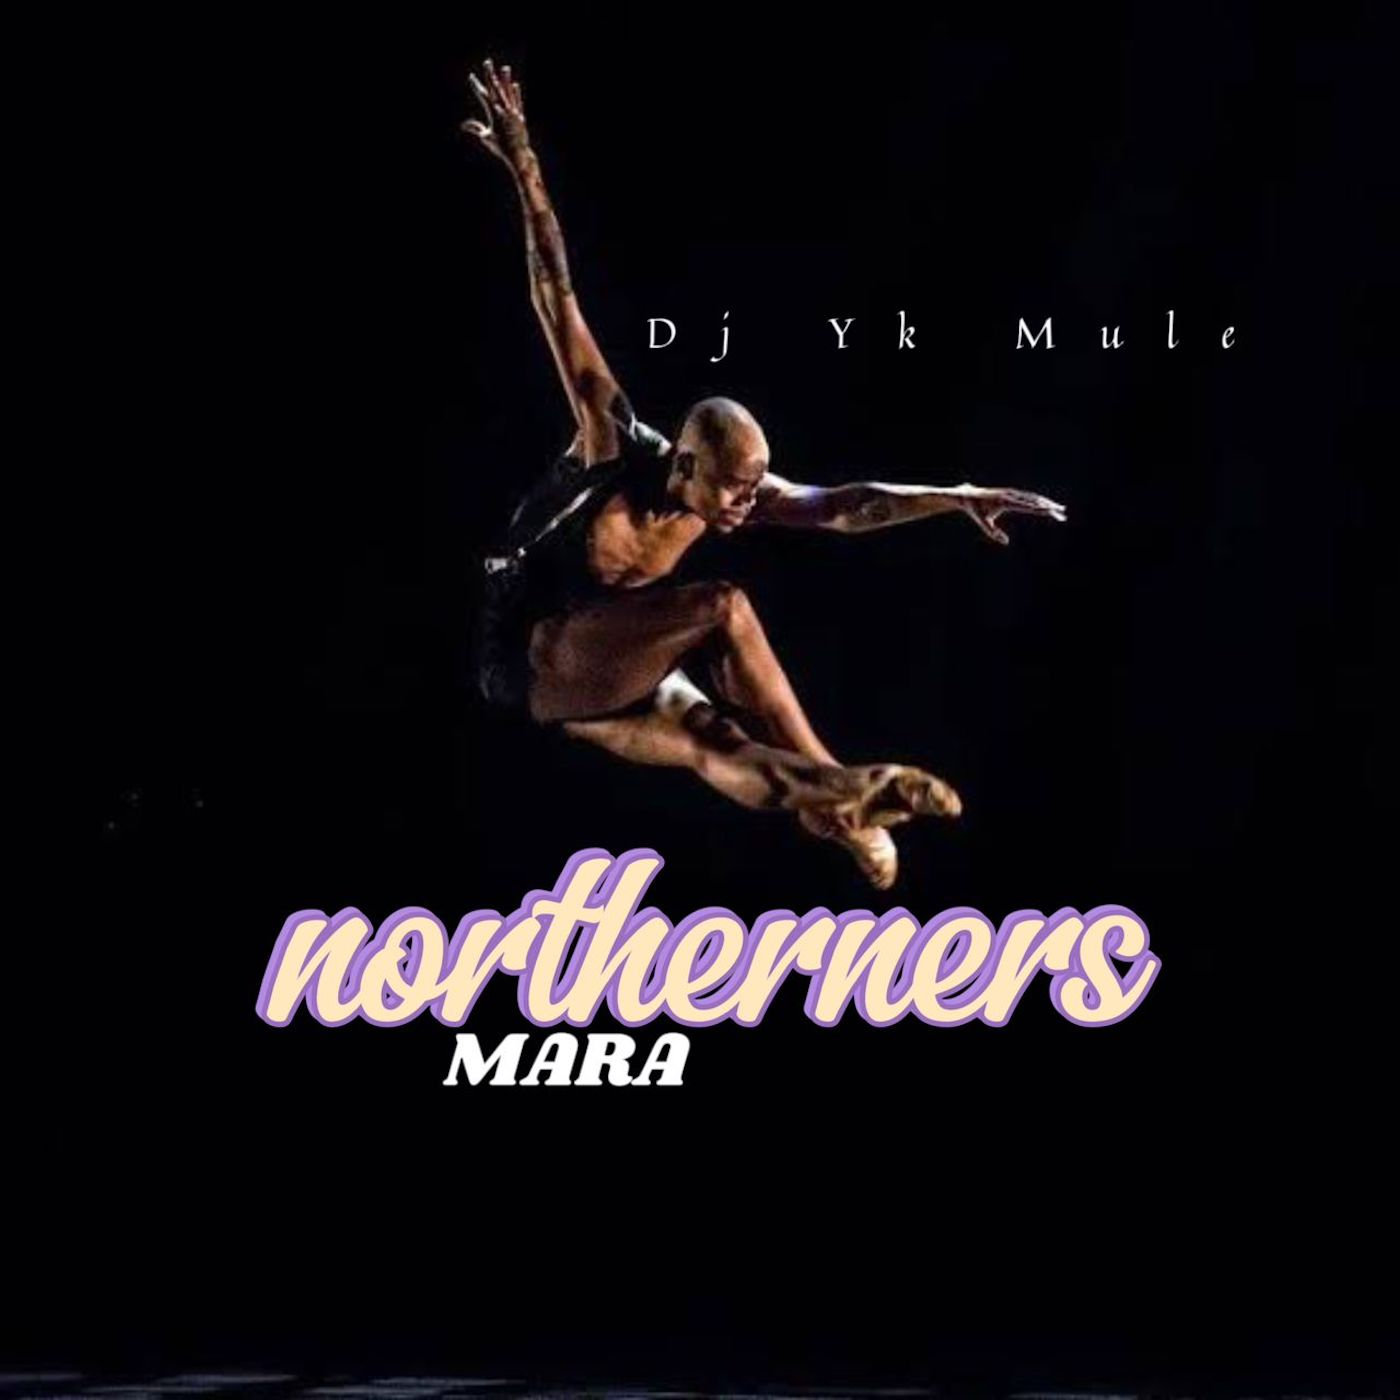 DJ Yk Mule Northerners Mara